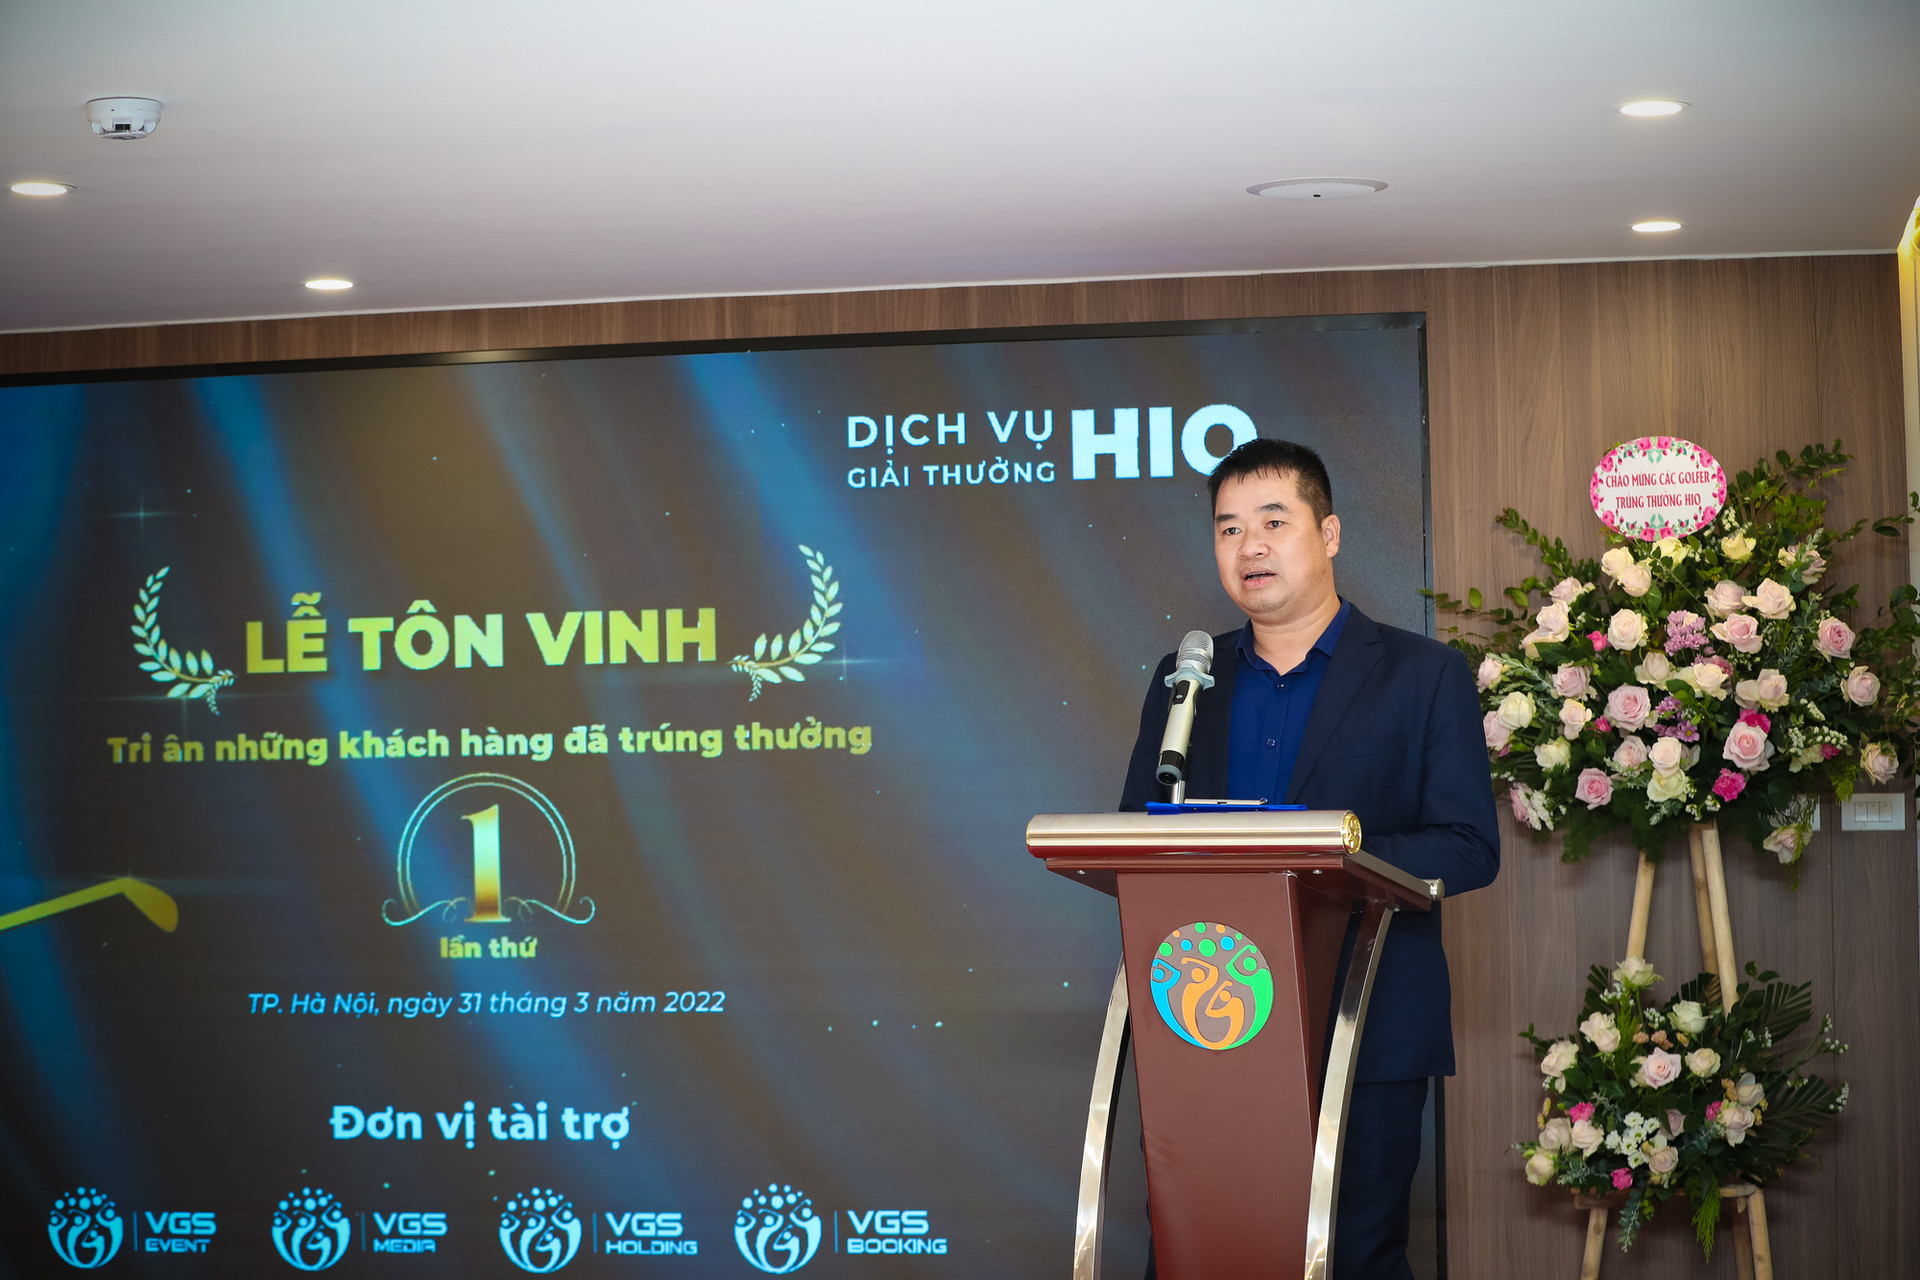 Buổi lễ được tổ chức đồng thời tại VGS Building – Hà Nội và VGS Southern – TP. HCM, quy tụ số lượng golfer đã ghi HIO và nhận tiền thưởng từ VGS Sport lớn nhất từ trước đến nay. - Ảnh 4.